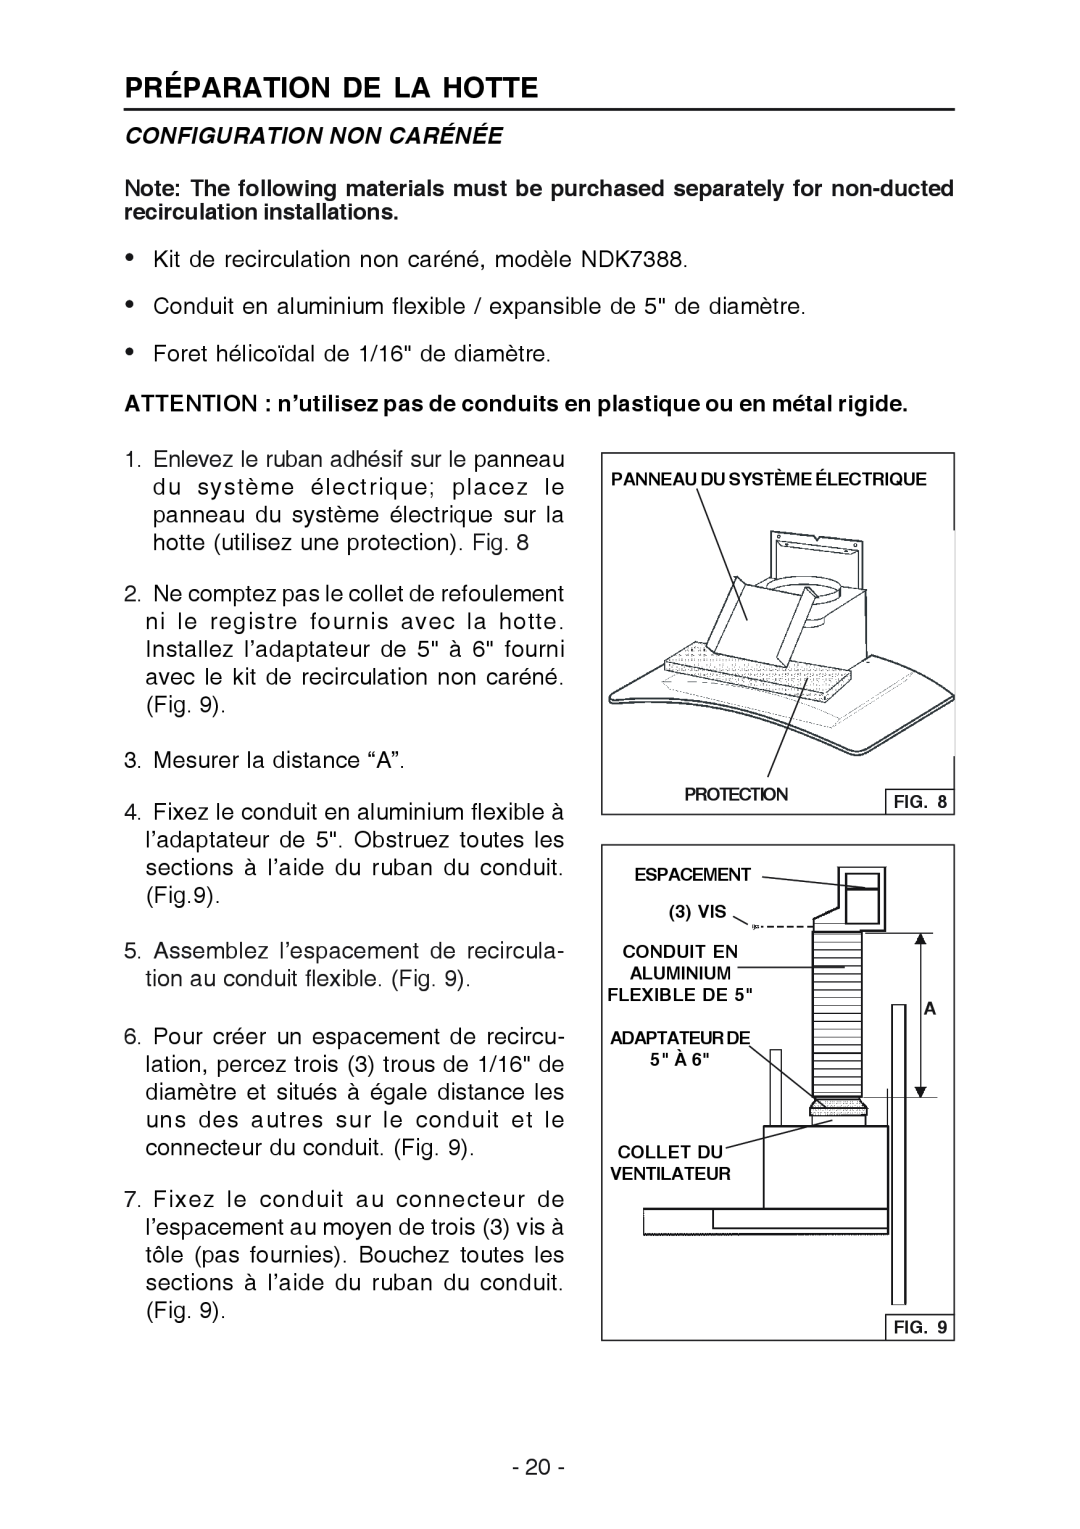 Broan K7388 manual Configuration Non Carénée, ATTENTION n’utilisez pas de conduits en plastique ou en métal rigide 